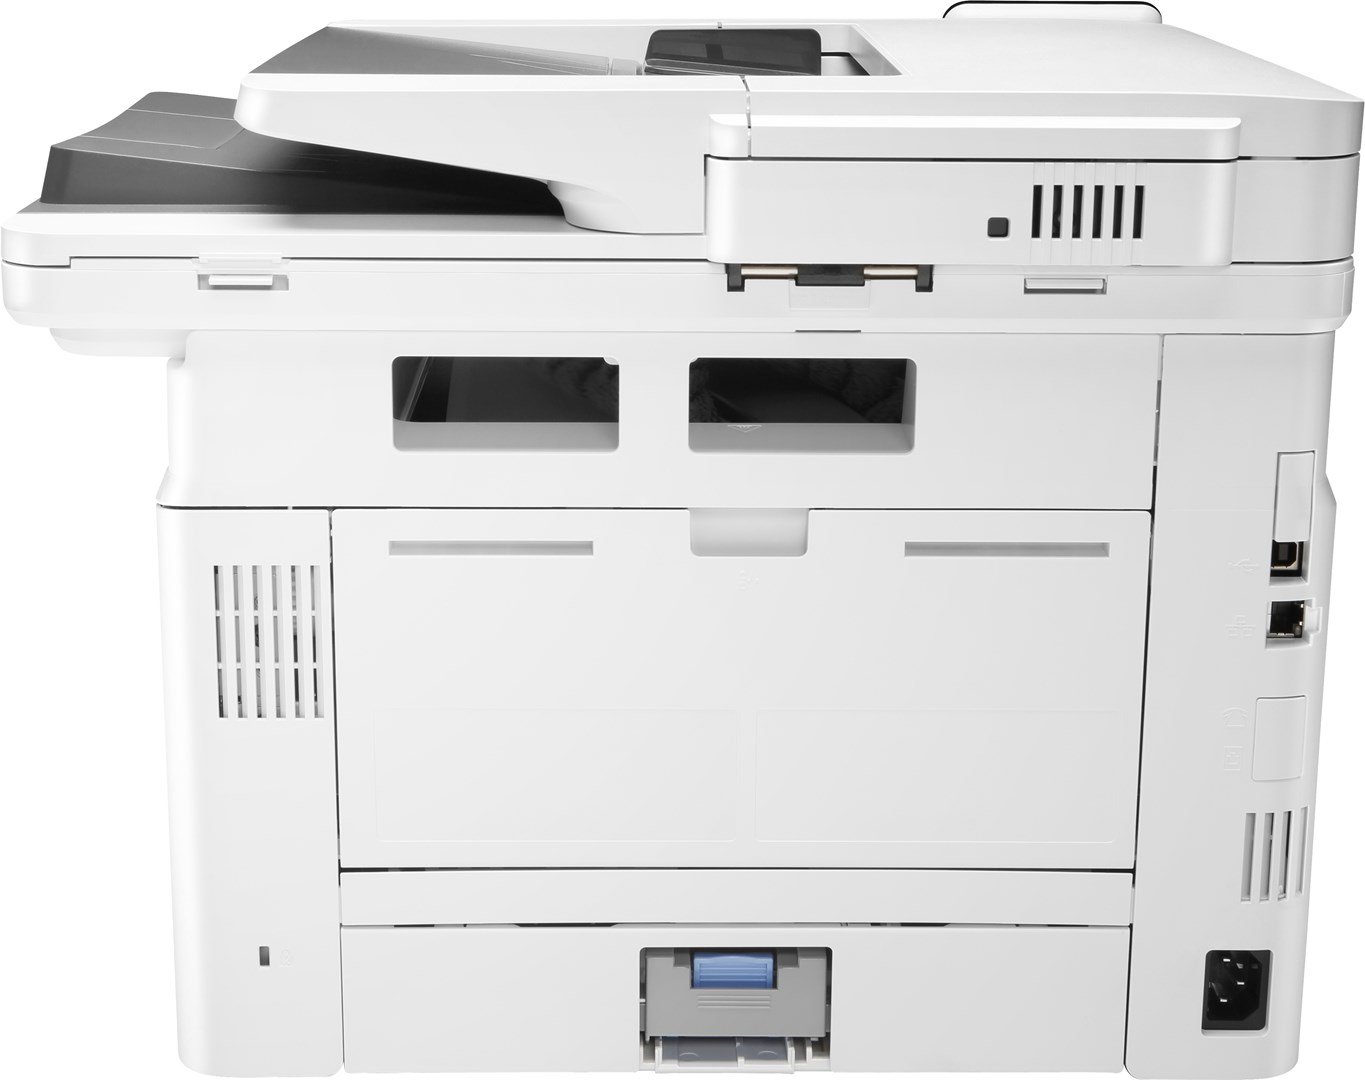 Daugiafunkcis spausdintuvas HP LaserJet Pro MFP M428dw, lazerinis - 4